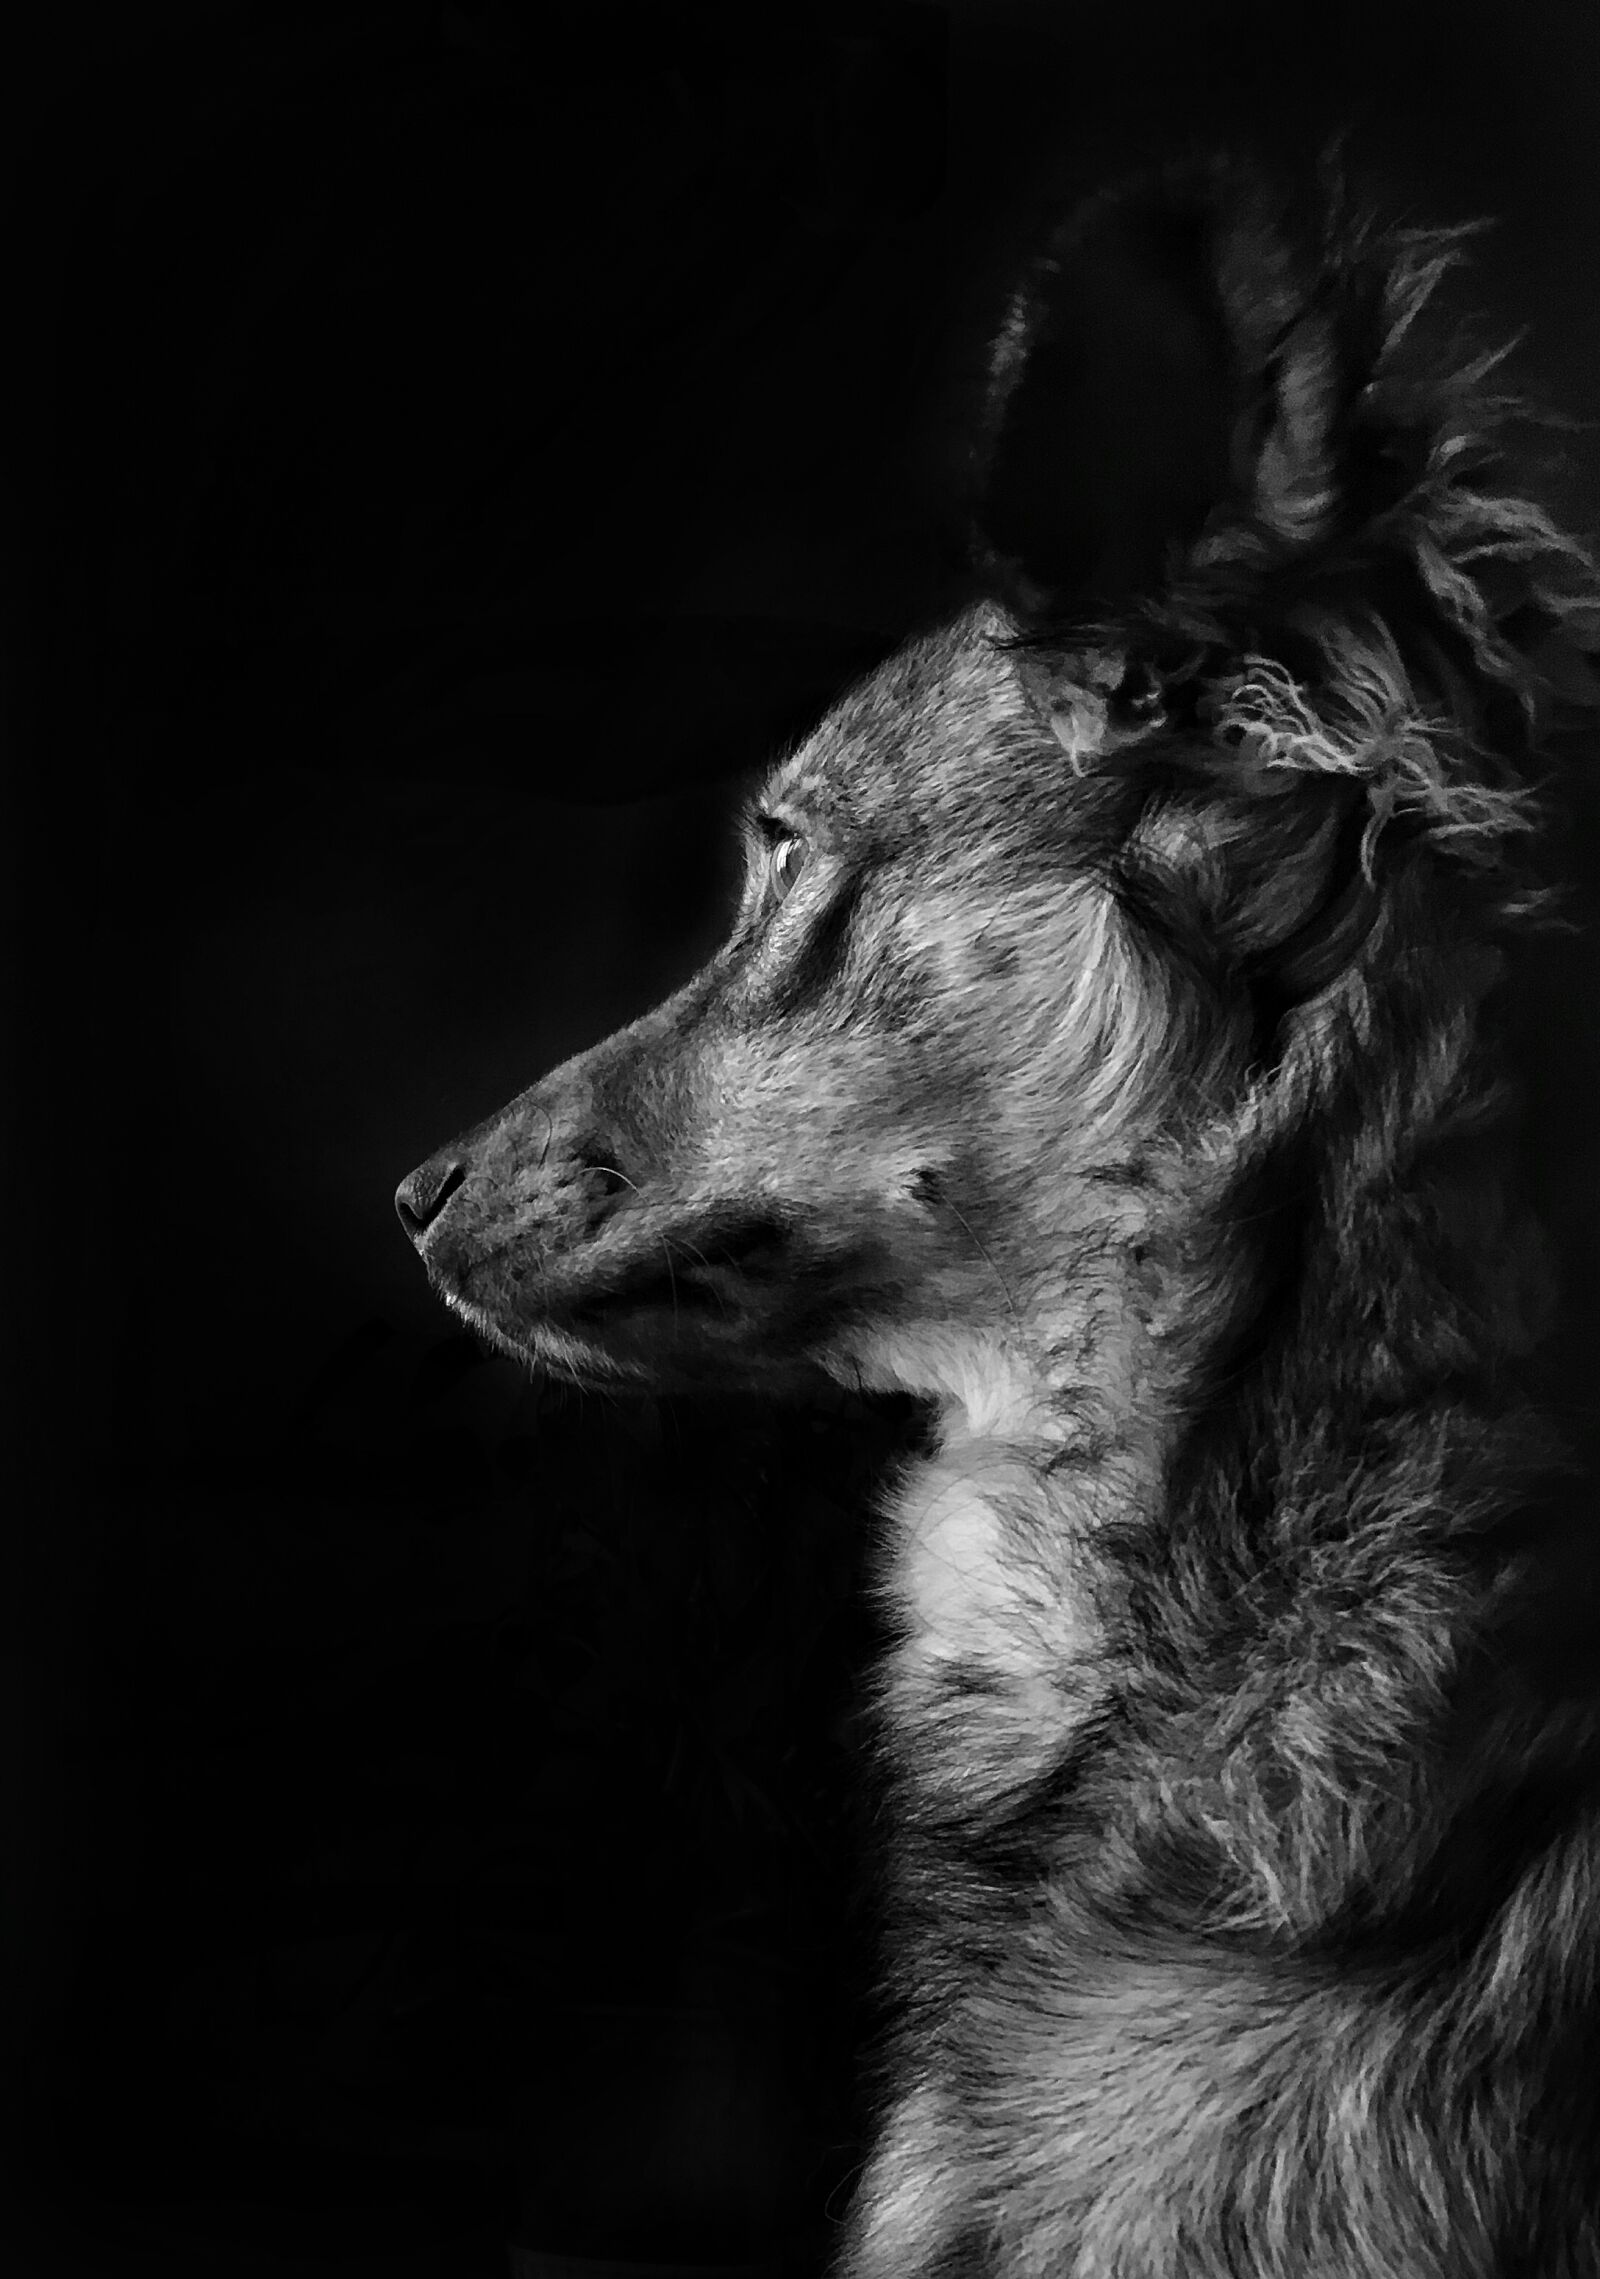 Apple iPhone SE sample photo. Dog, animal photography